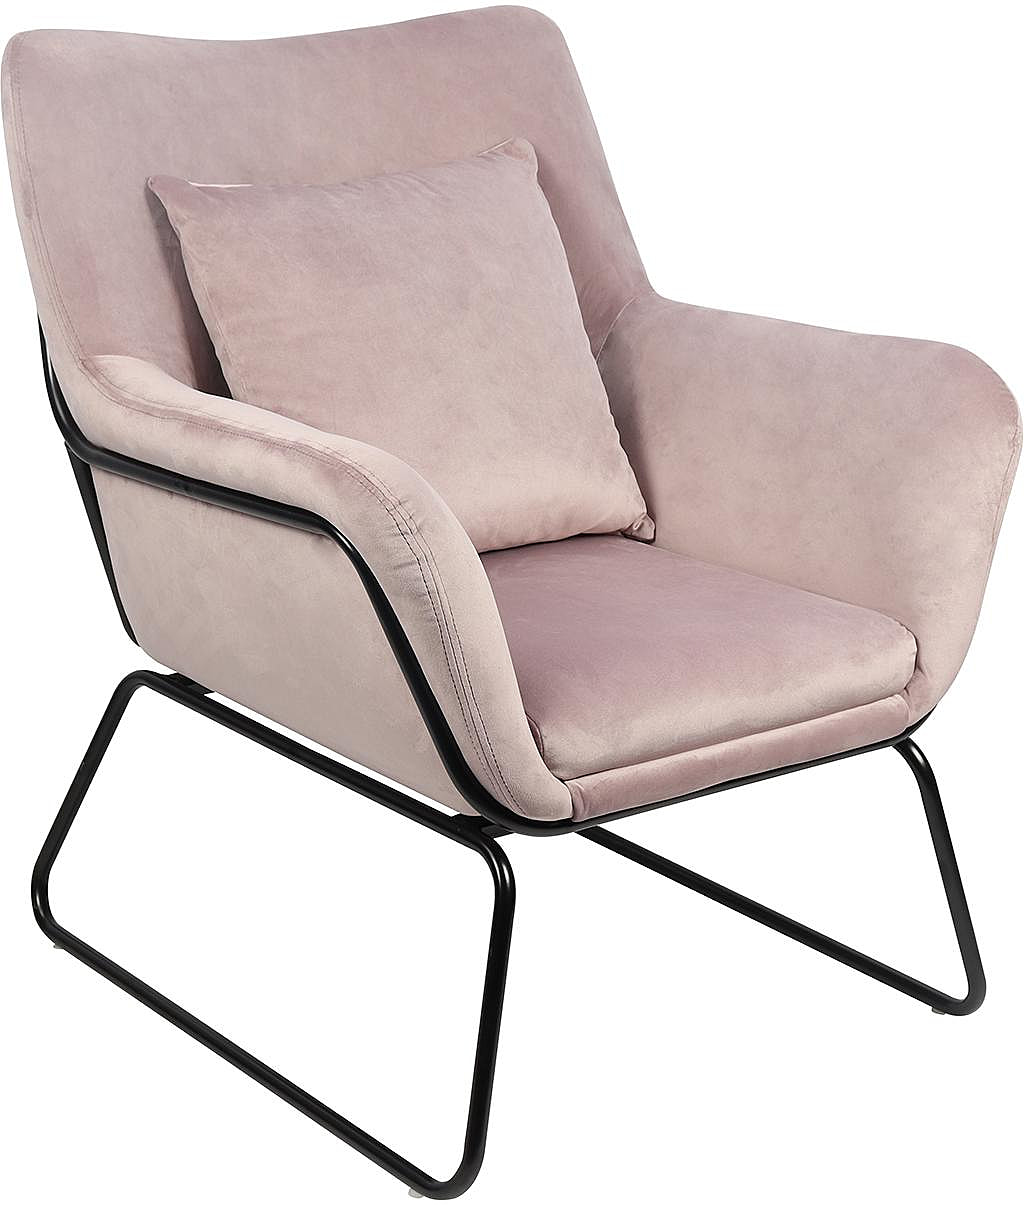 SalesFever Relaxsessel Sessel mit Samtbezug in verschiedenen Farben | Sessel